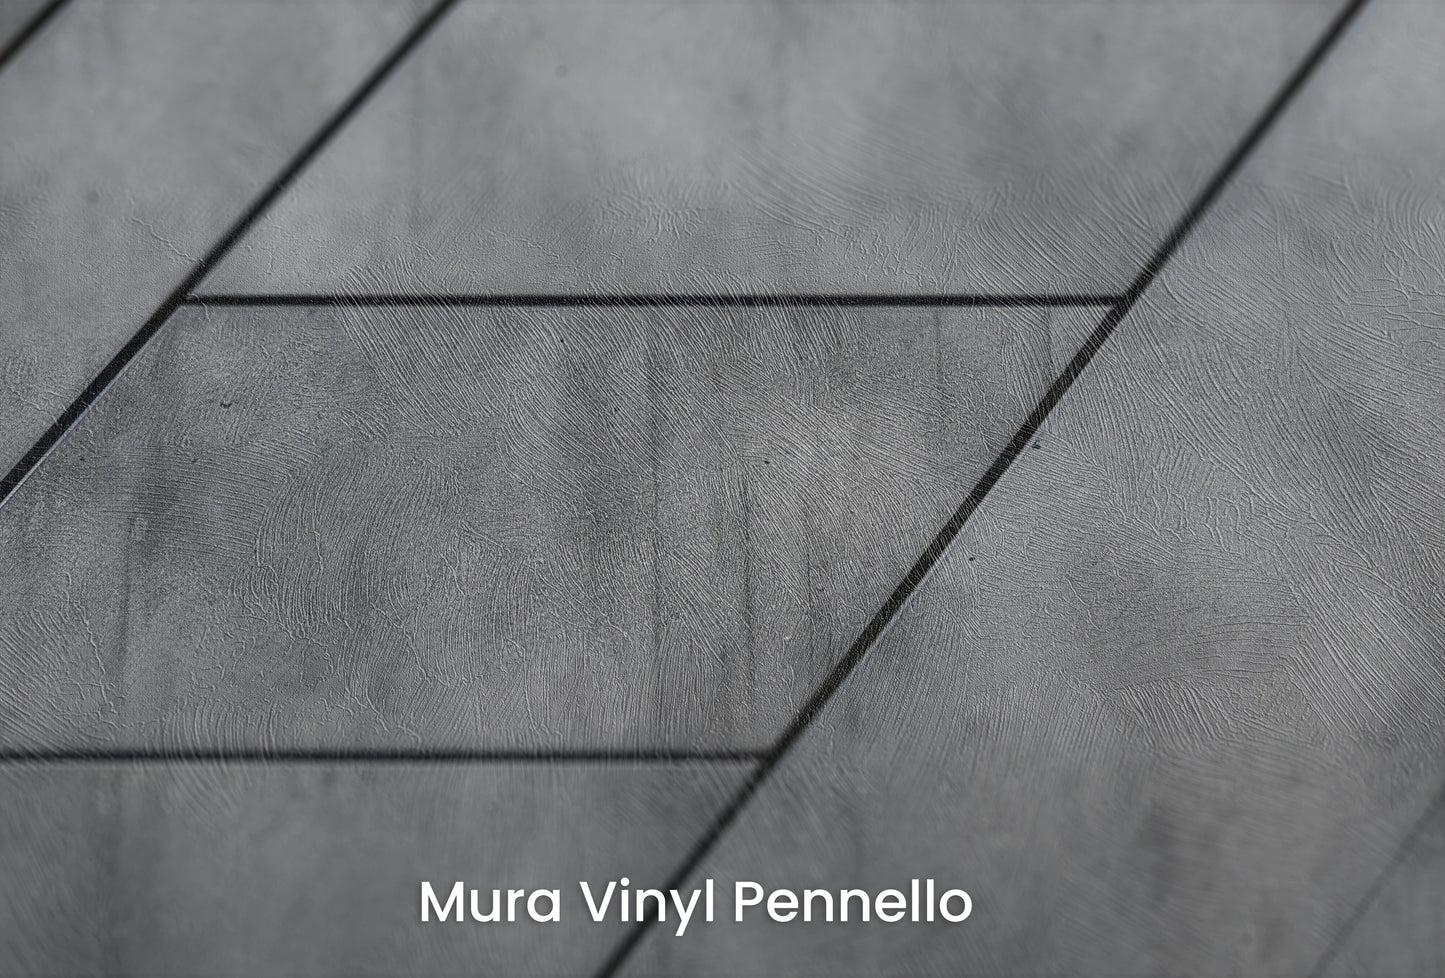 Zbliżenie na artystyczną fototapetę o nazwie Linear Perspective na podłożu Mura Vinyl Pennello - faktura pociągnięć pędzla malarskiego.